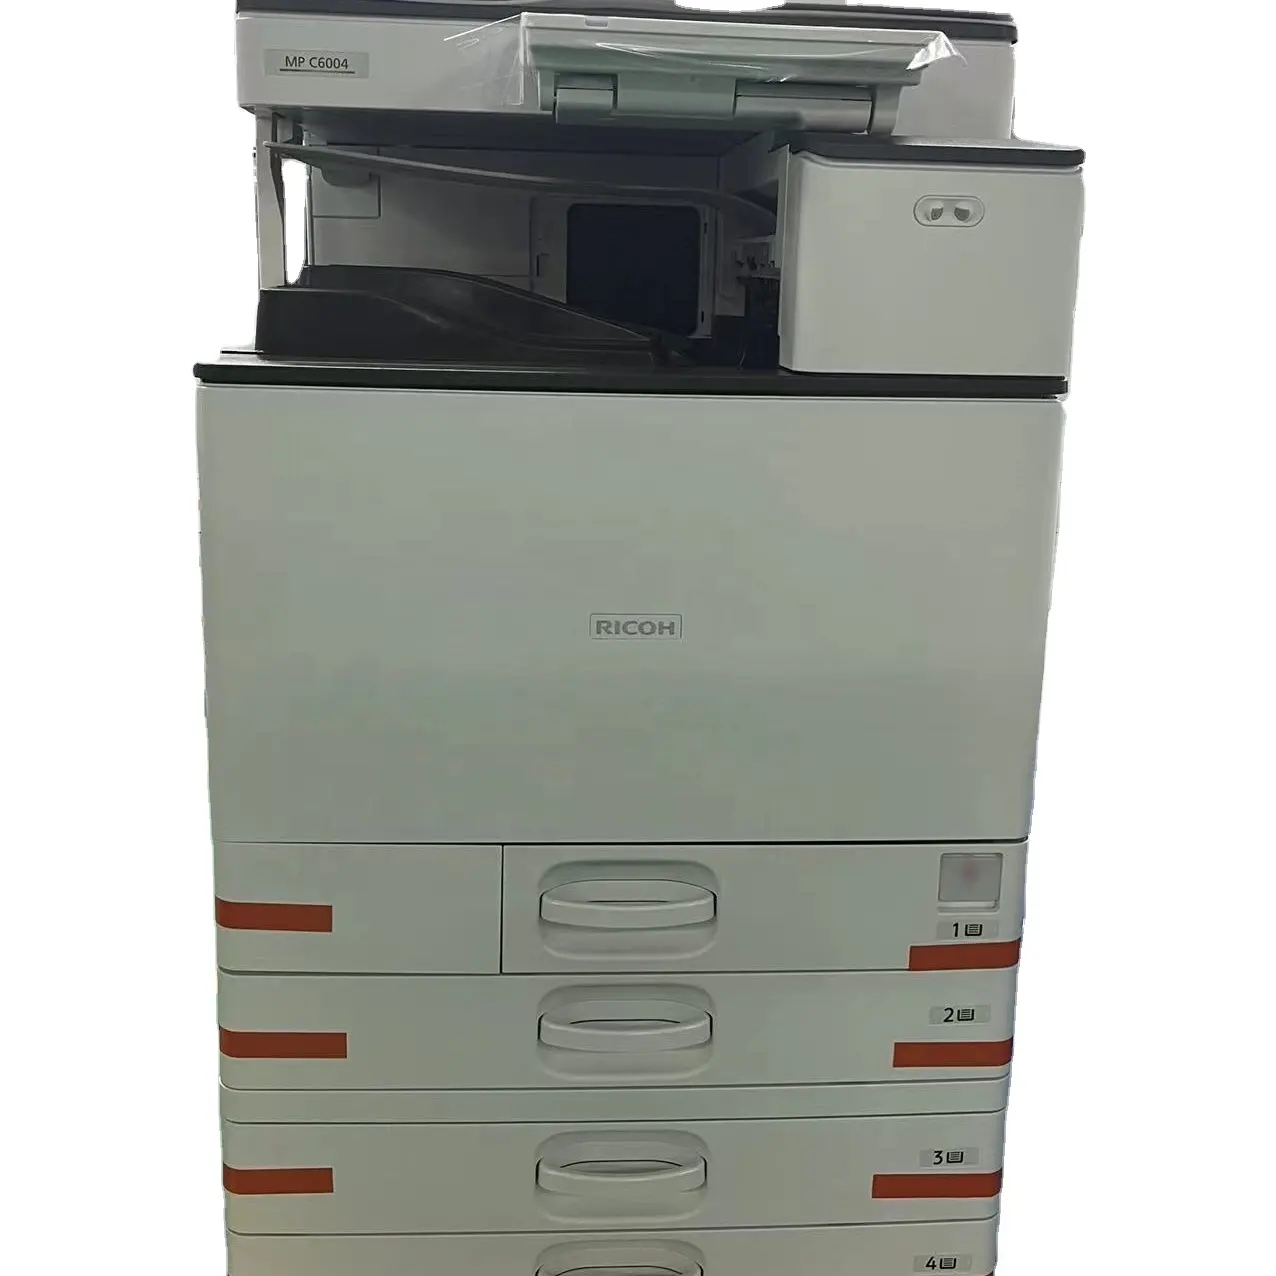 Máquina de impresión de fotocopiadoras para Ricoh Aficio MPC6004/C5504/C4504, copiadora de impresora multifuncional reacondicionada